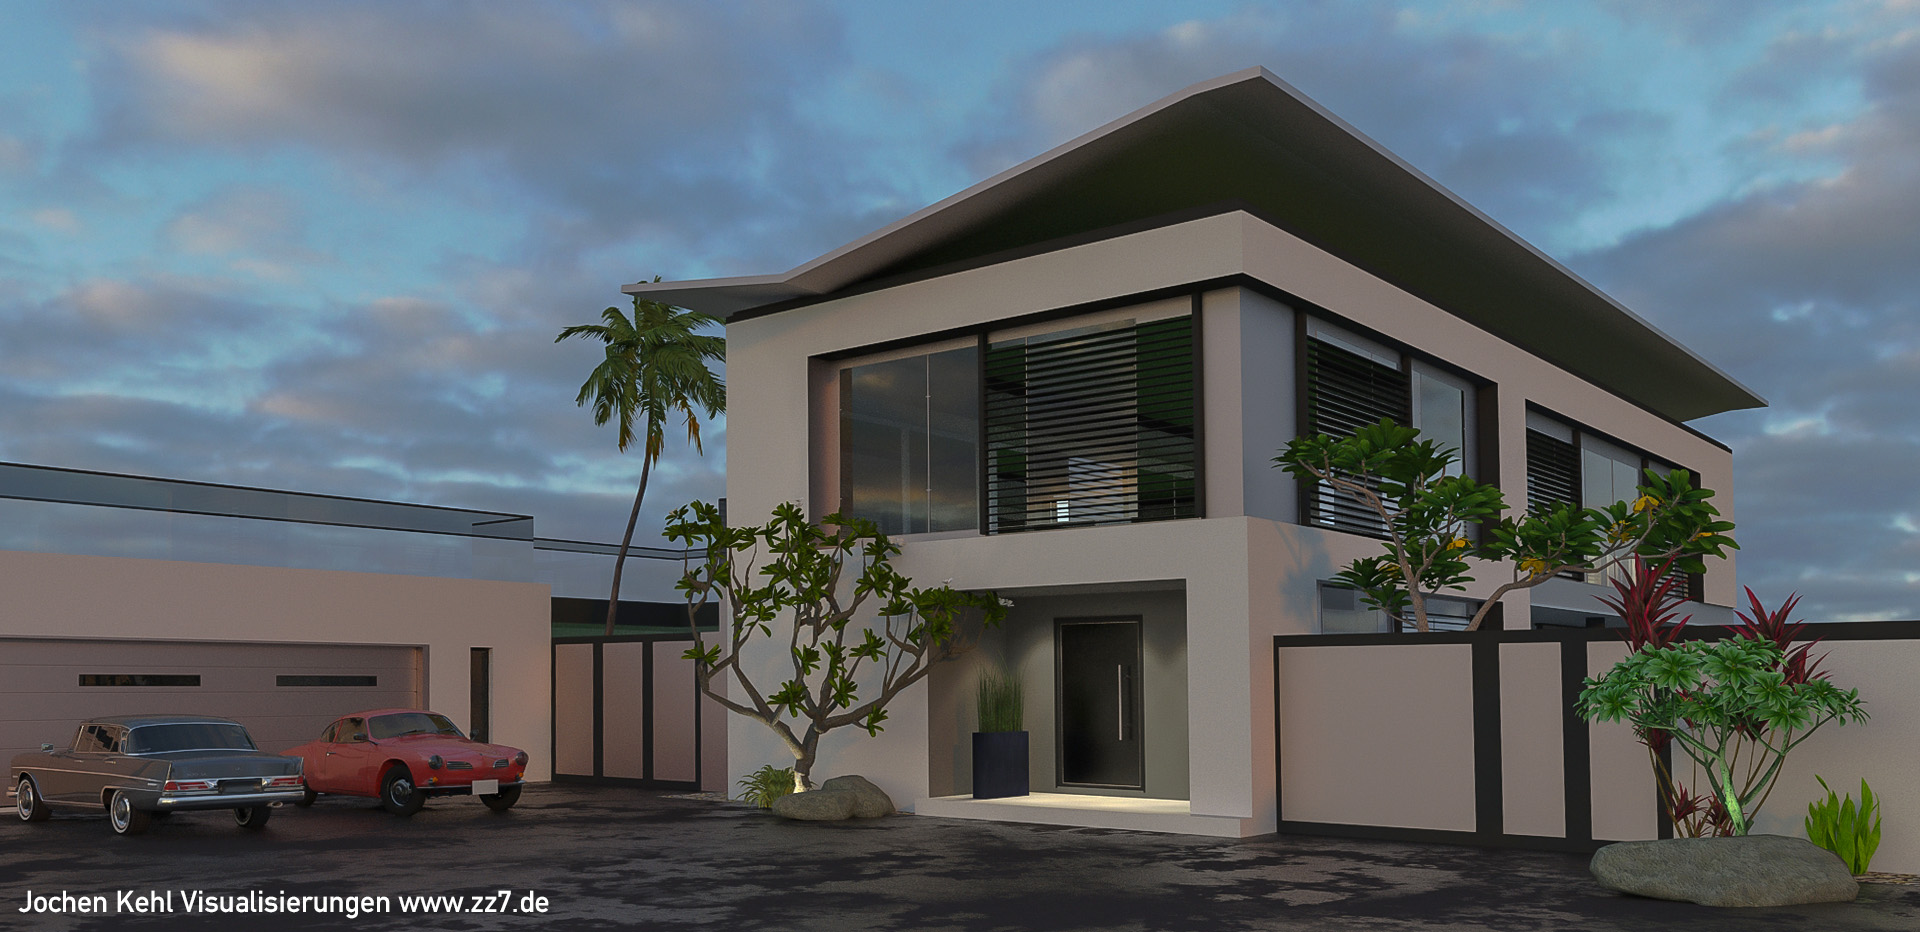 asian-house-render002ppst.jpg